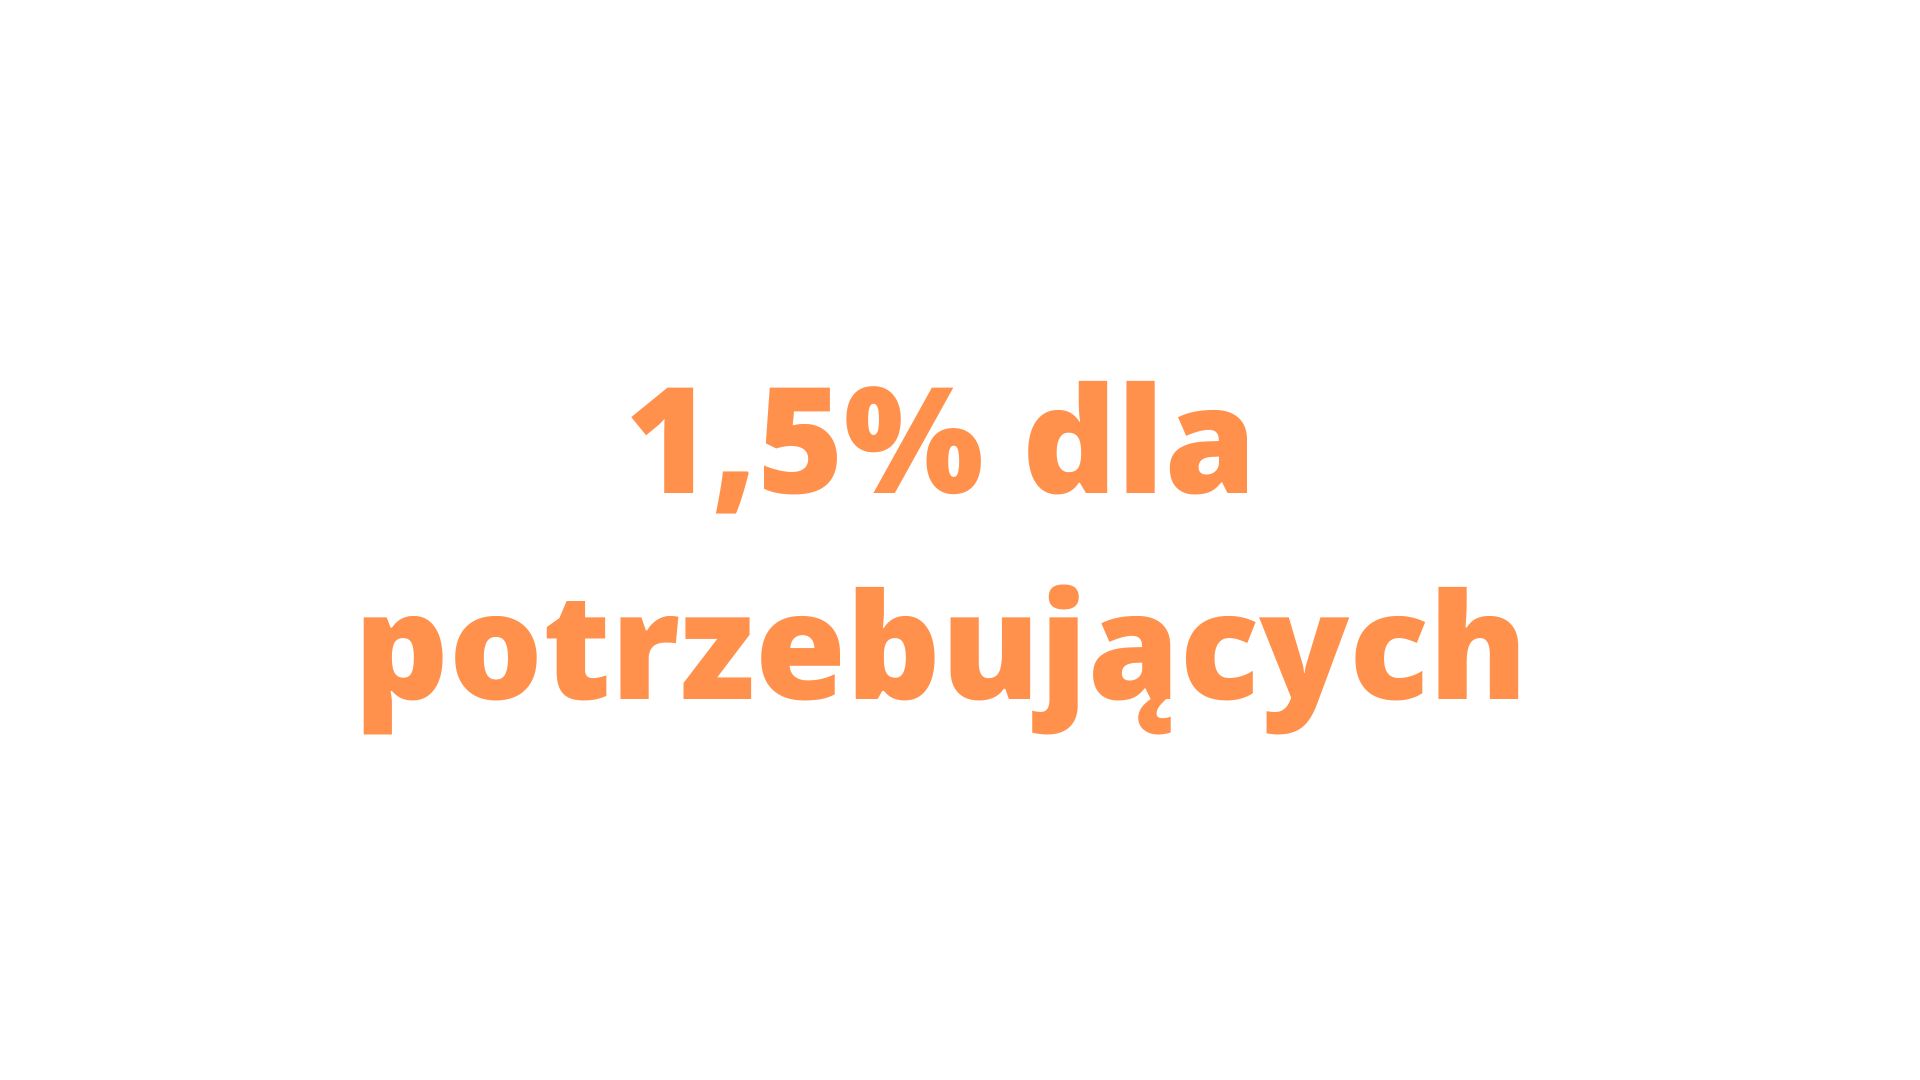 1,5% dla potrzebujących wsparcia z terenu gminy Skrzyszów